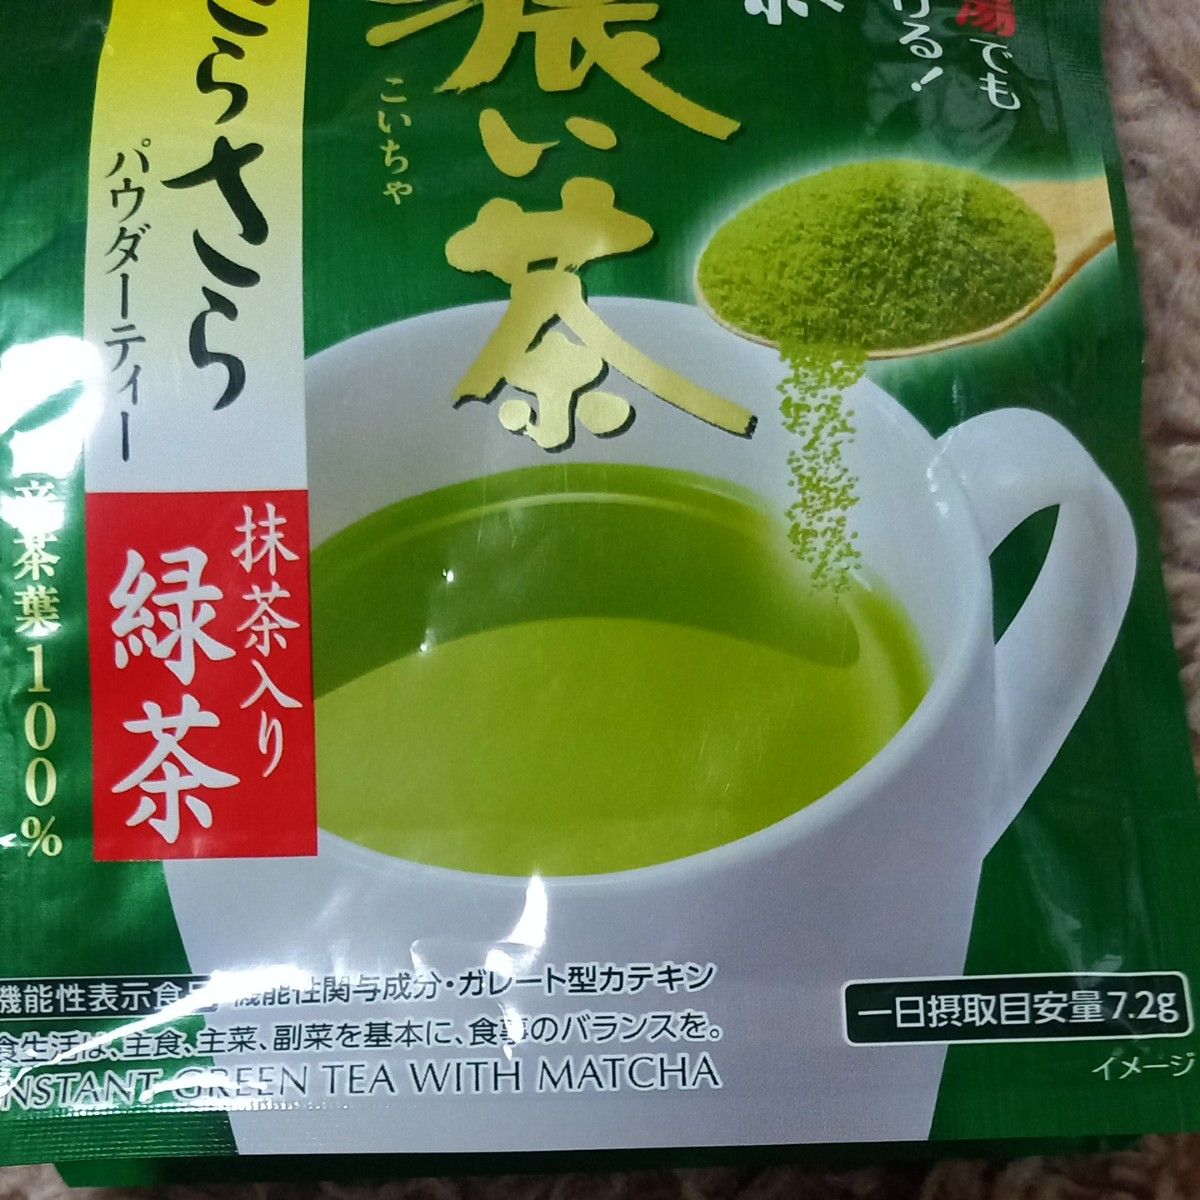 伊藤園 お～いお茶 濃い茶 さらさら抹茶入り緑茶 80g×2袋